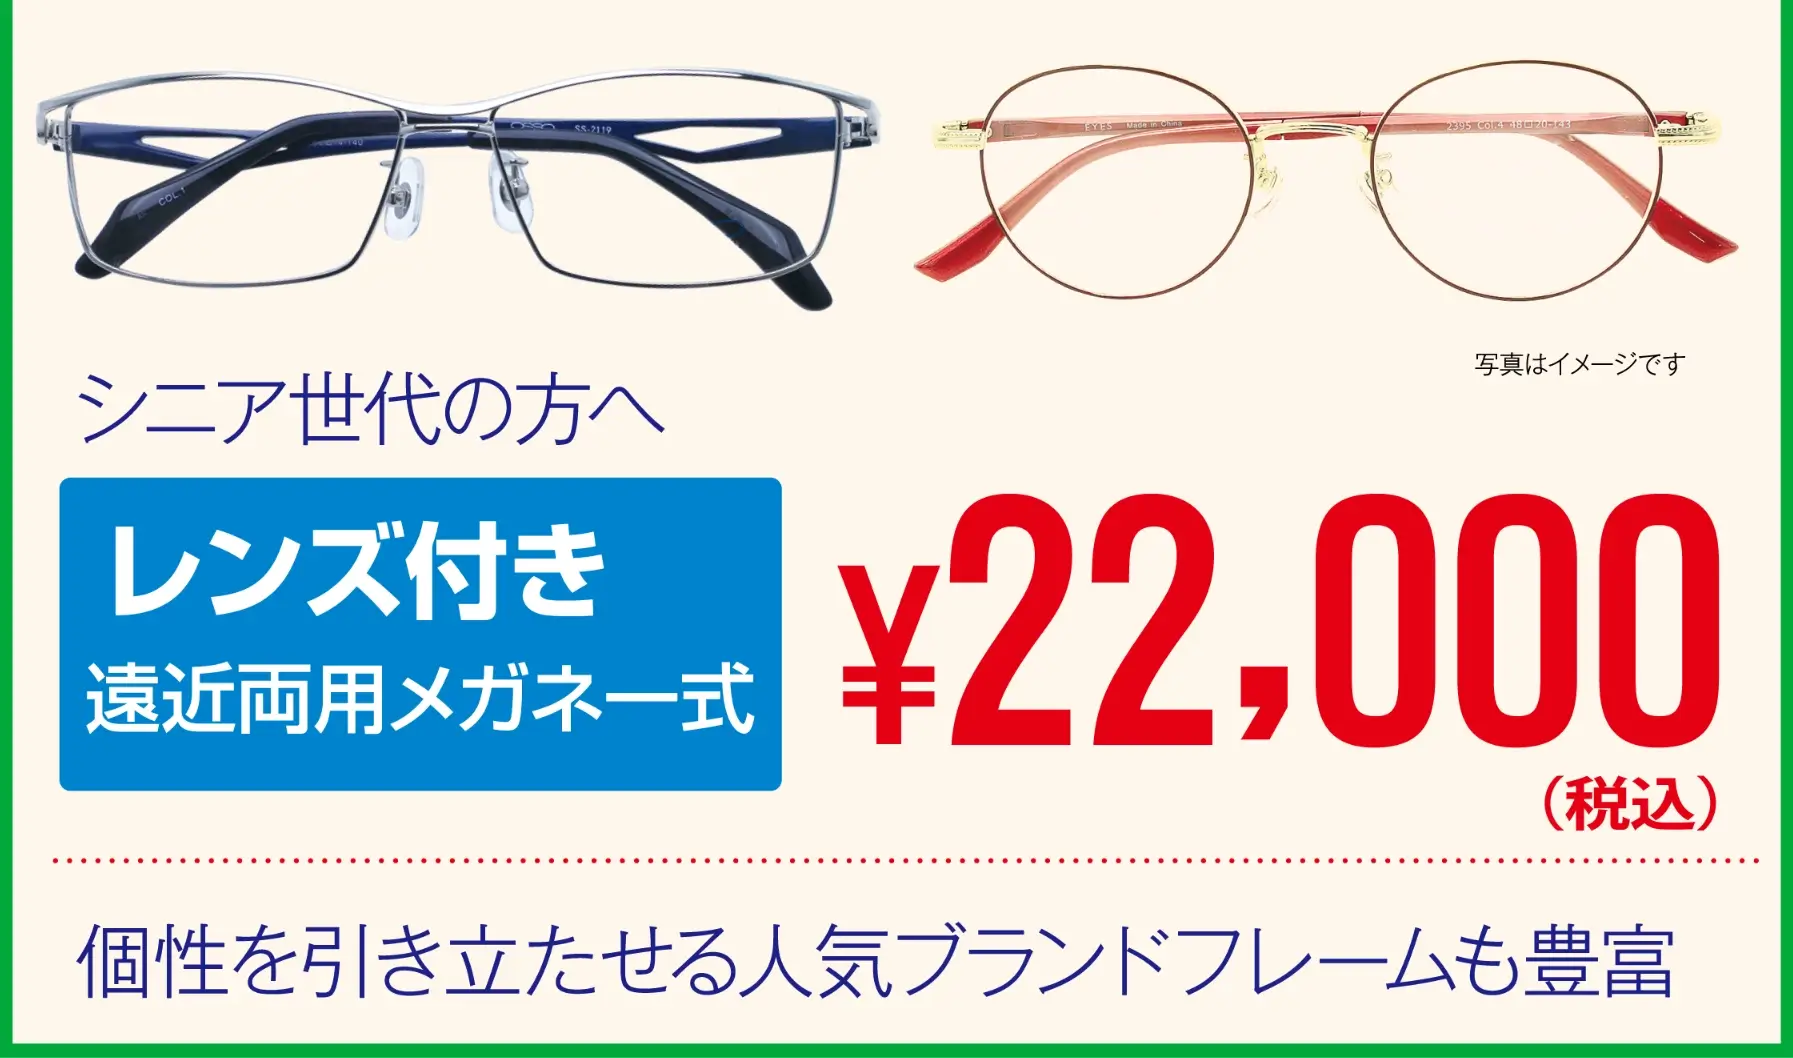 生活応援メガネセット 22000円